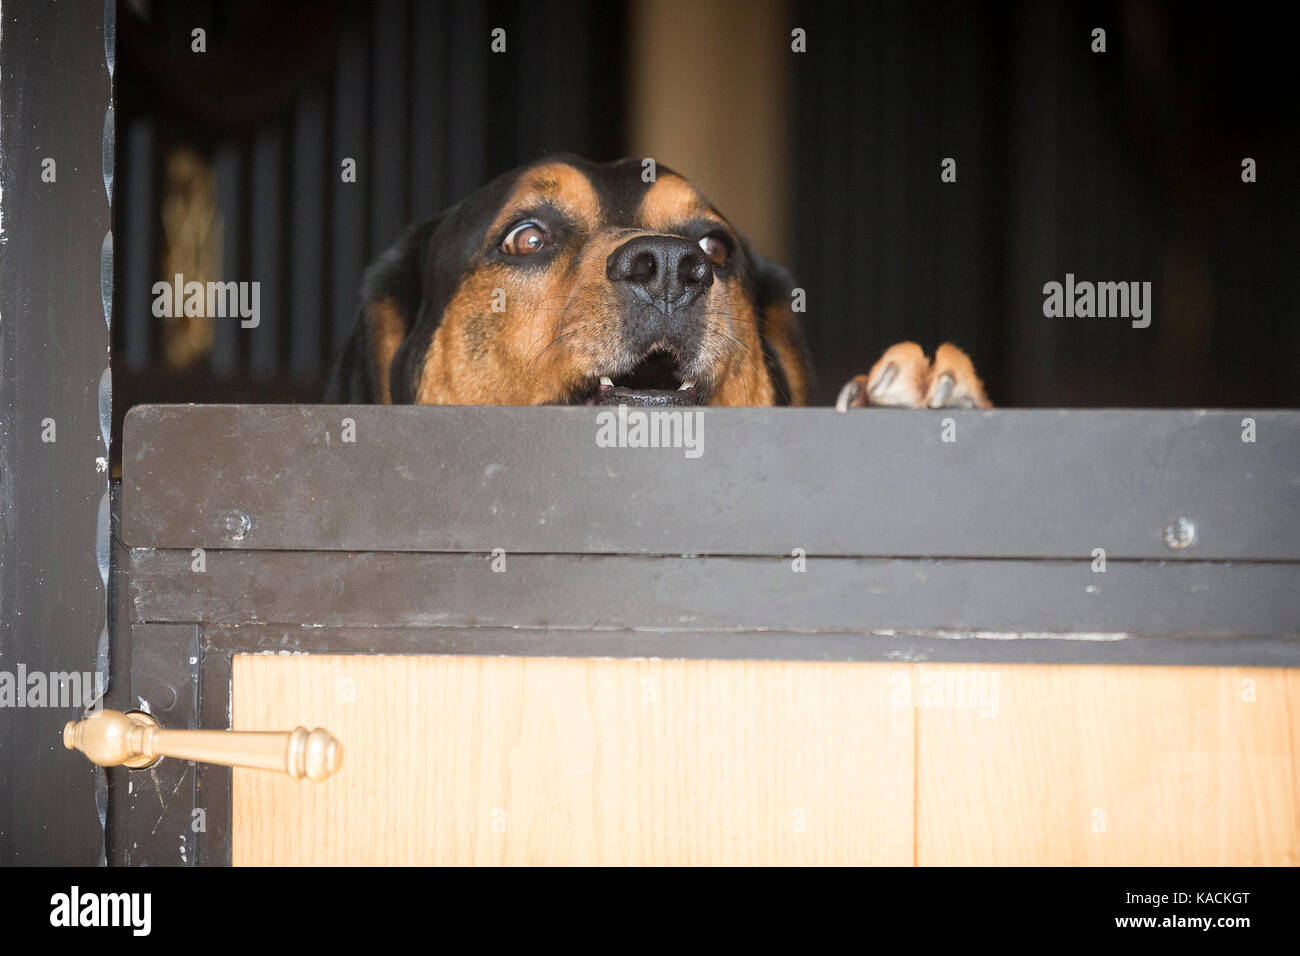 Depldesire'. Hot dog à la recherche sur une porte de l'écurie, d'aboyer. Allemagne Banque D'Images